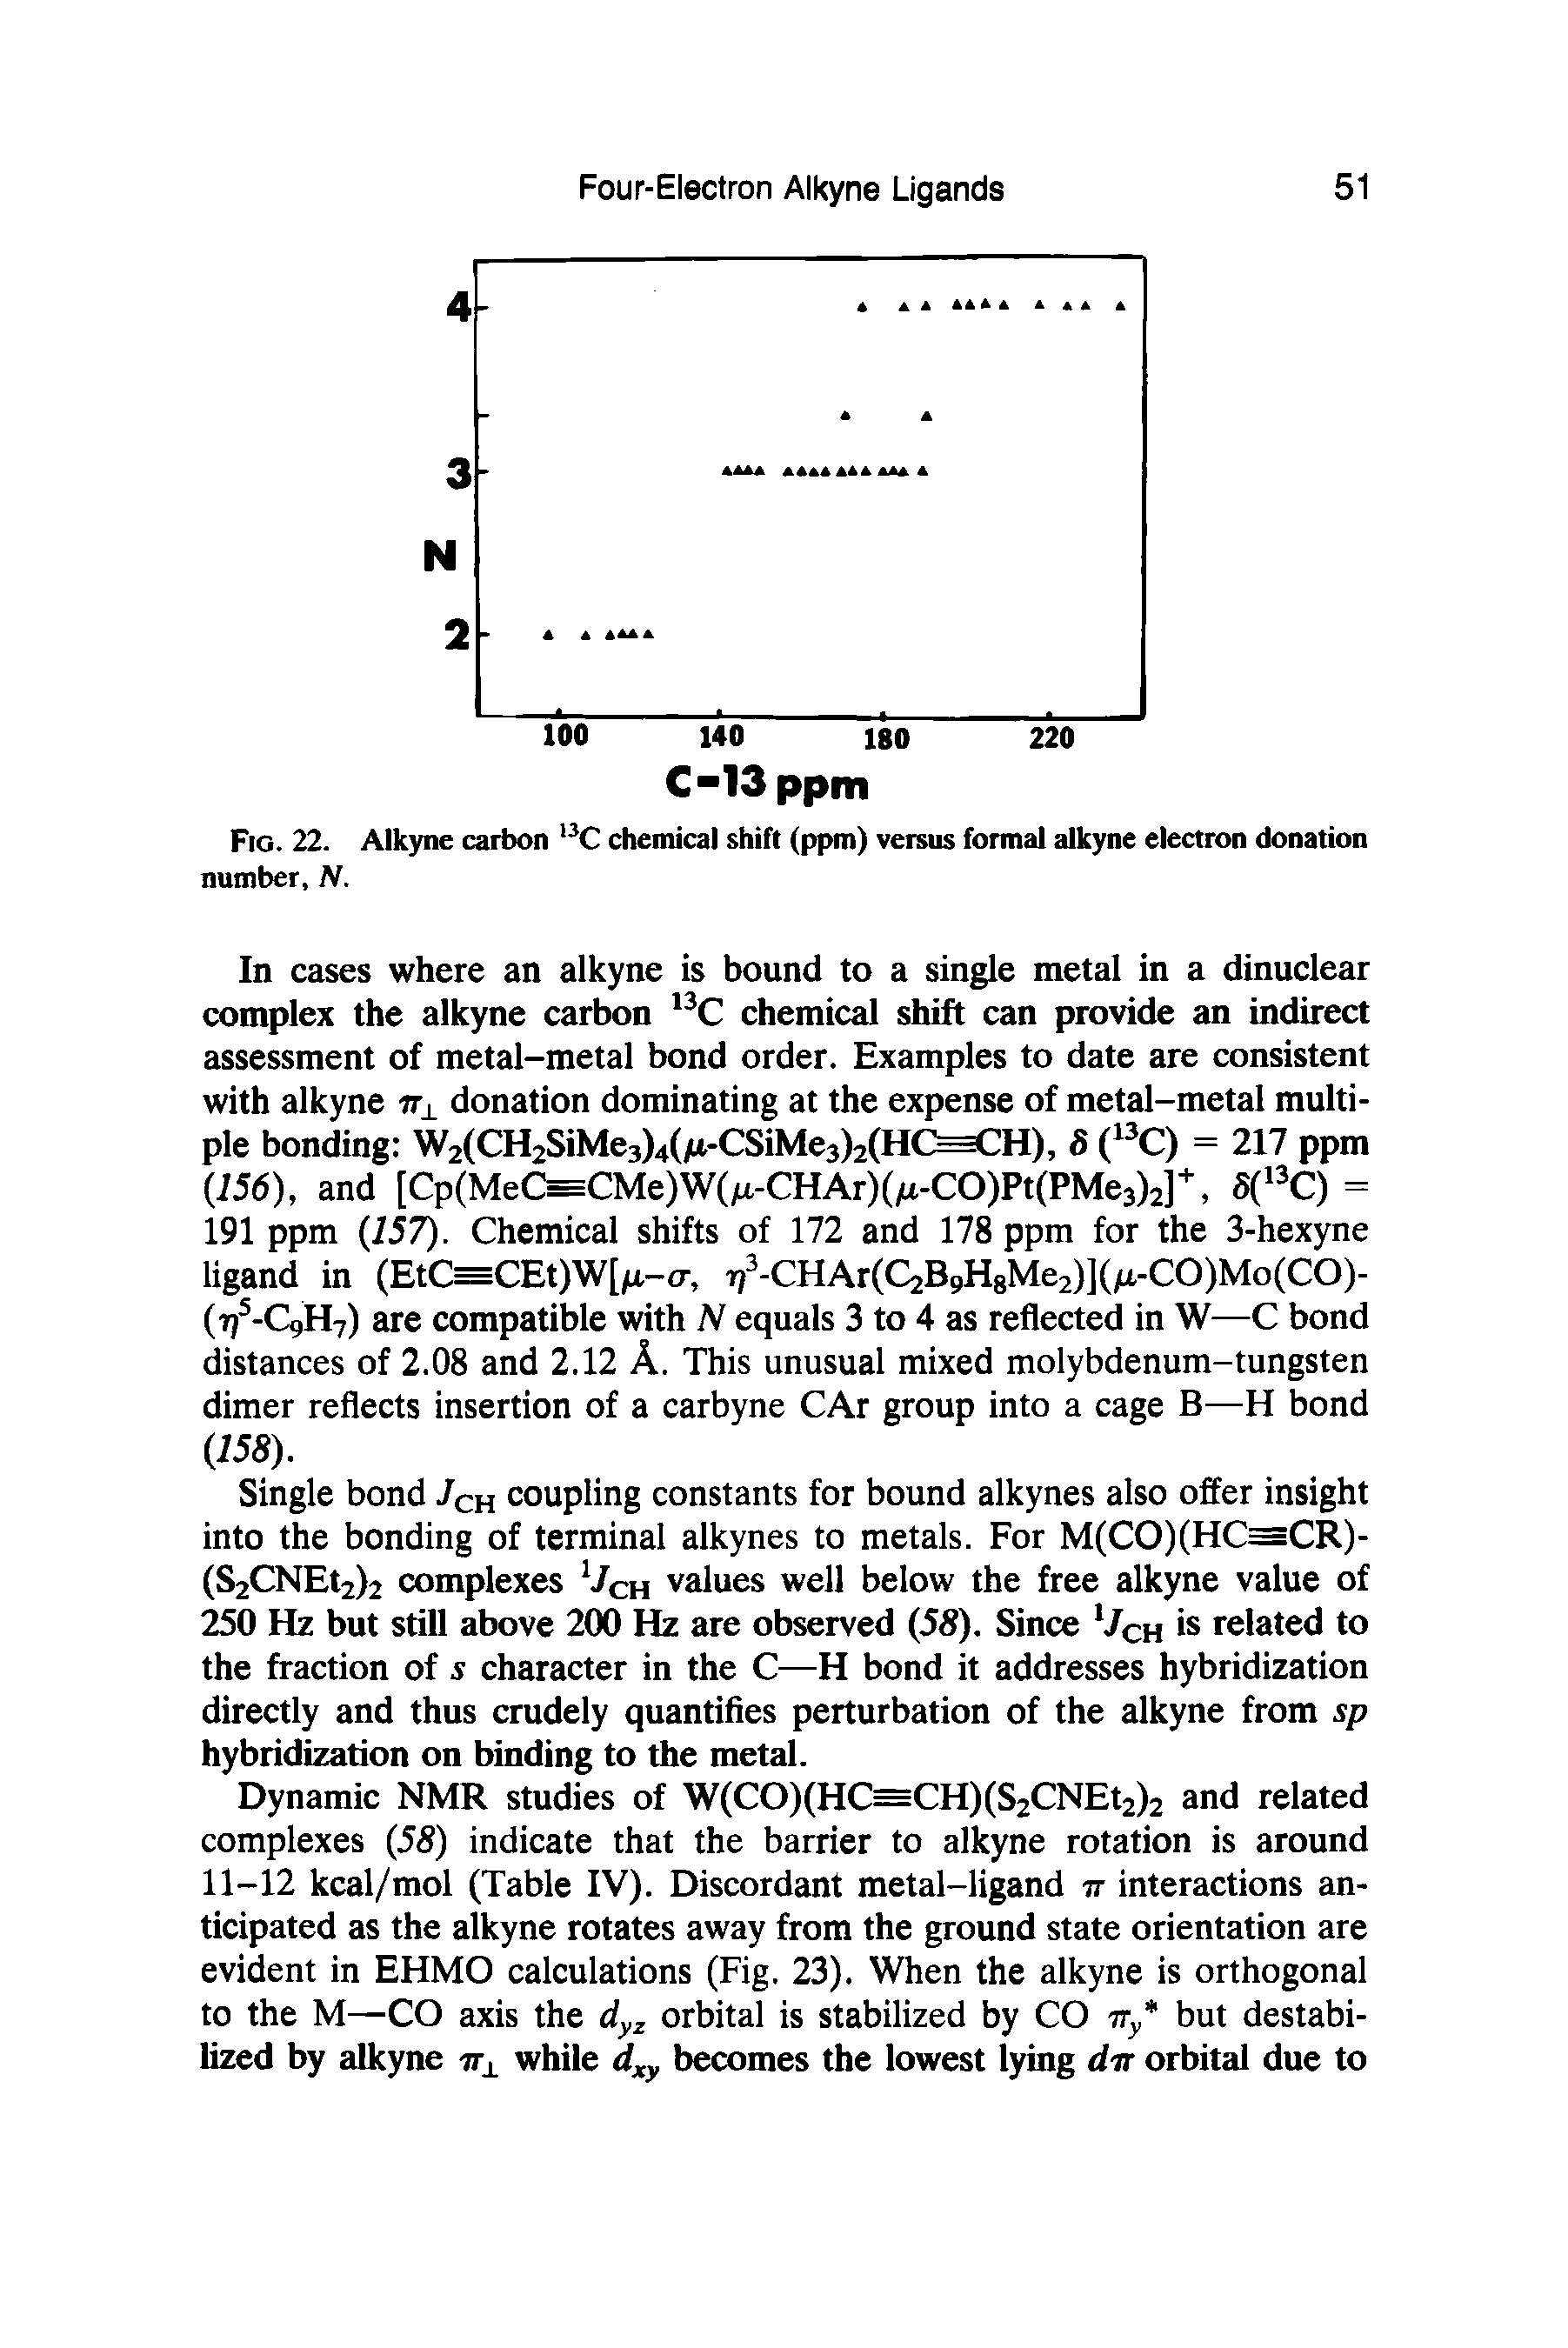 Fig. 22. Alkyne carbon l3C chemical shift (ppm) versus formal alkyne electron donation number, N.